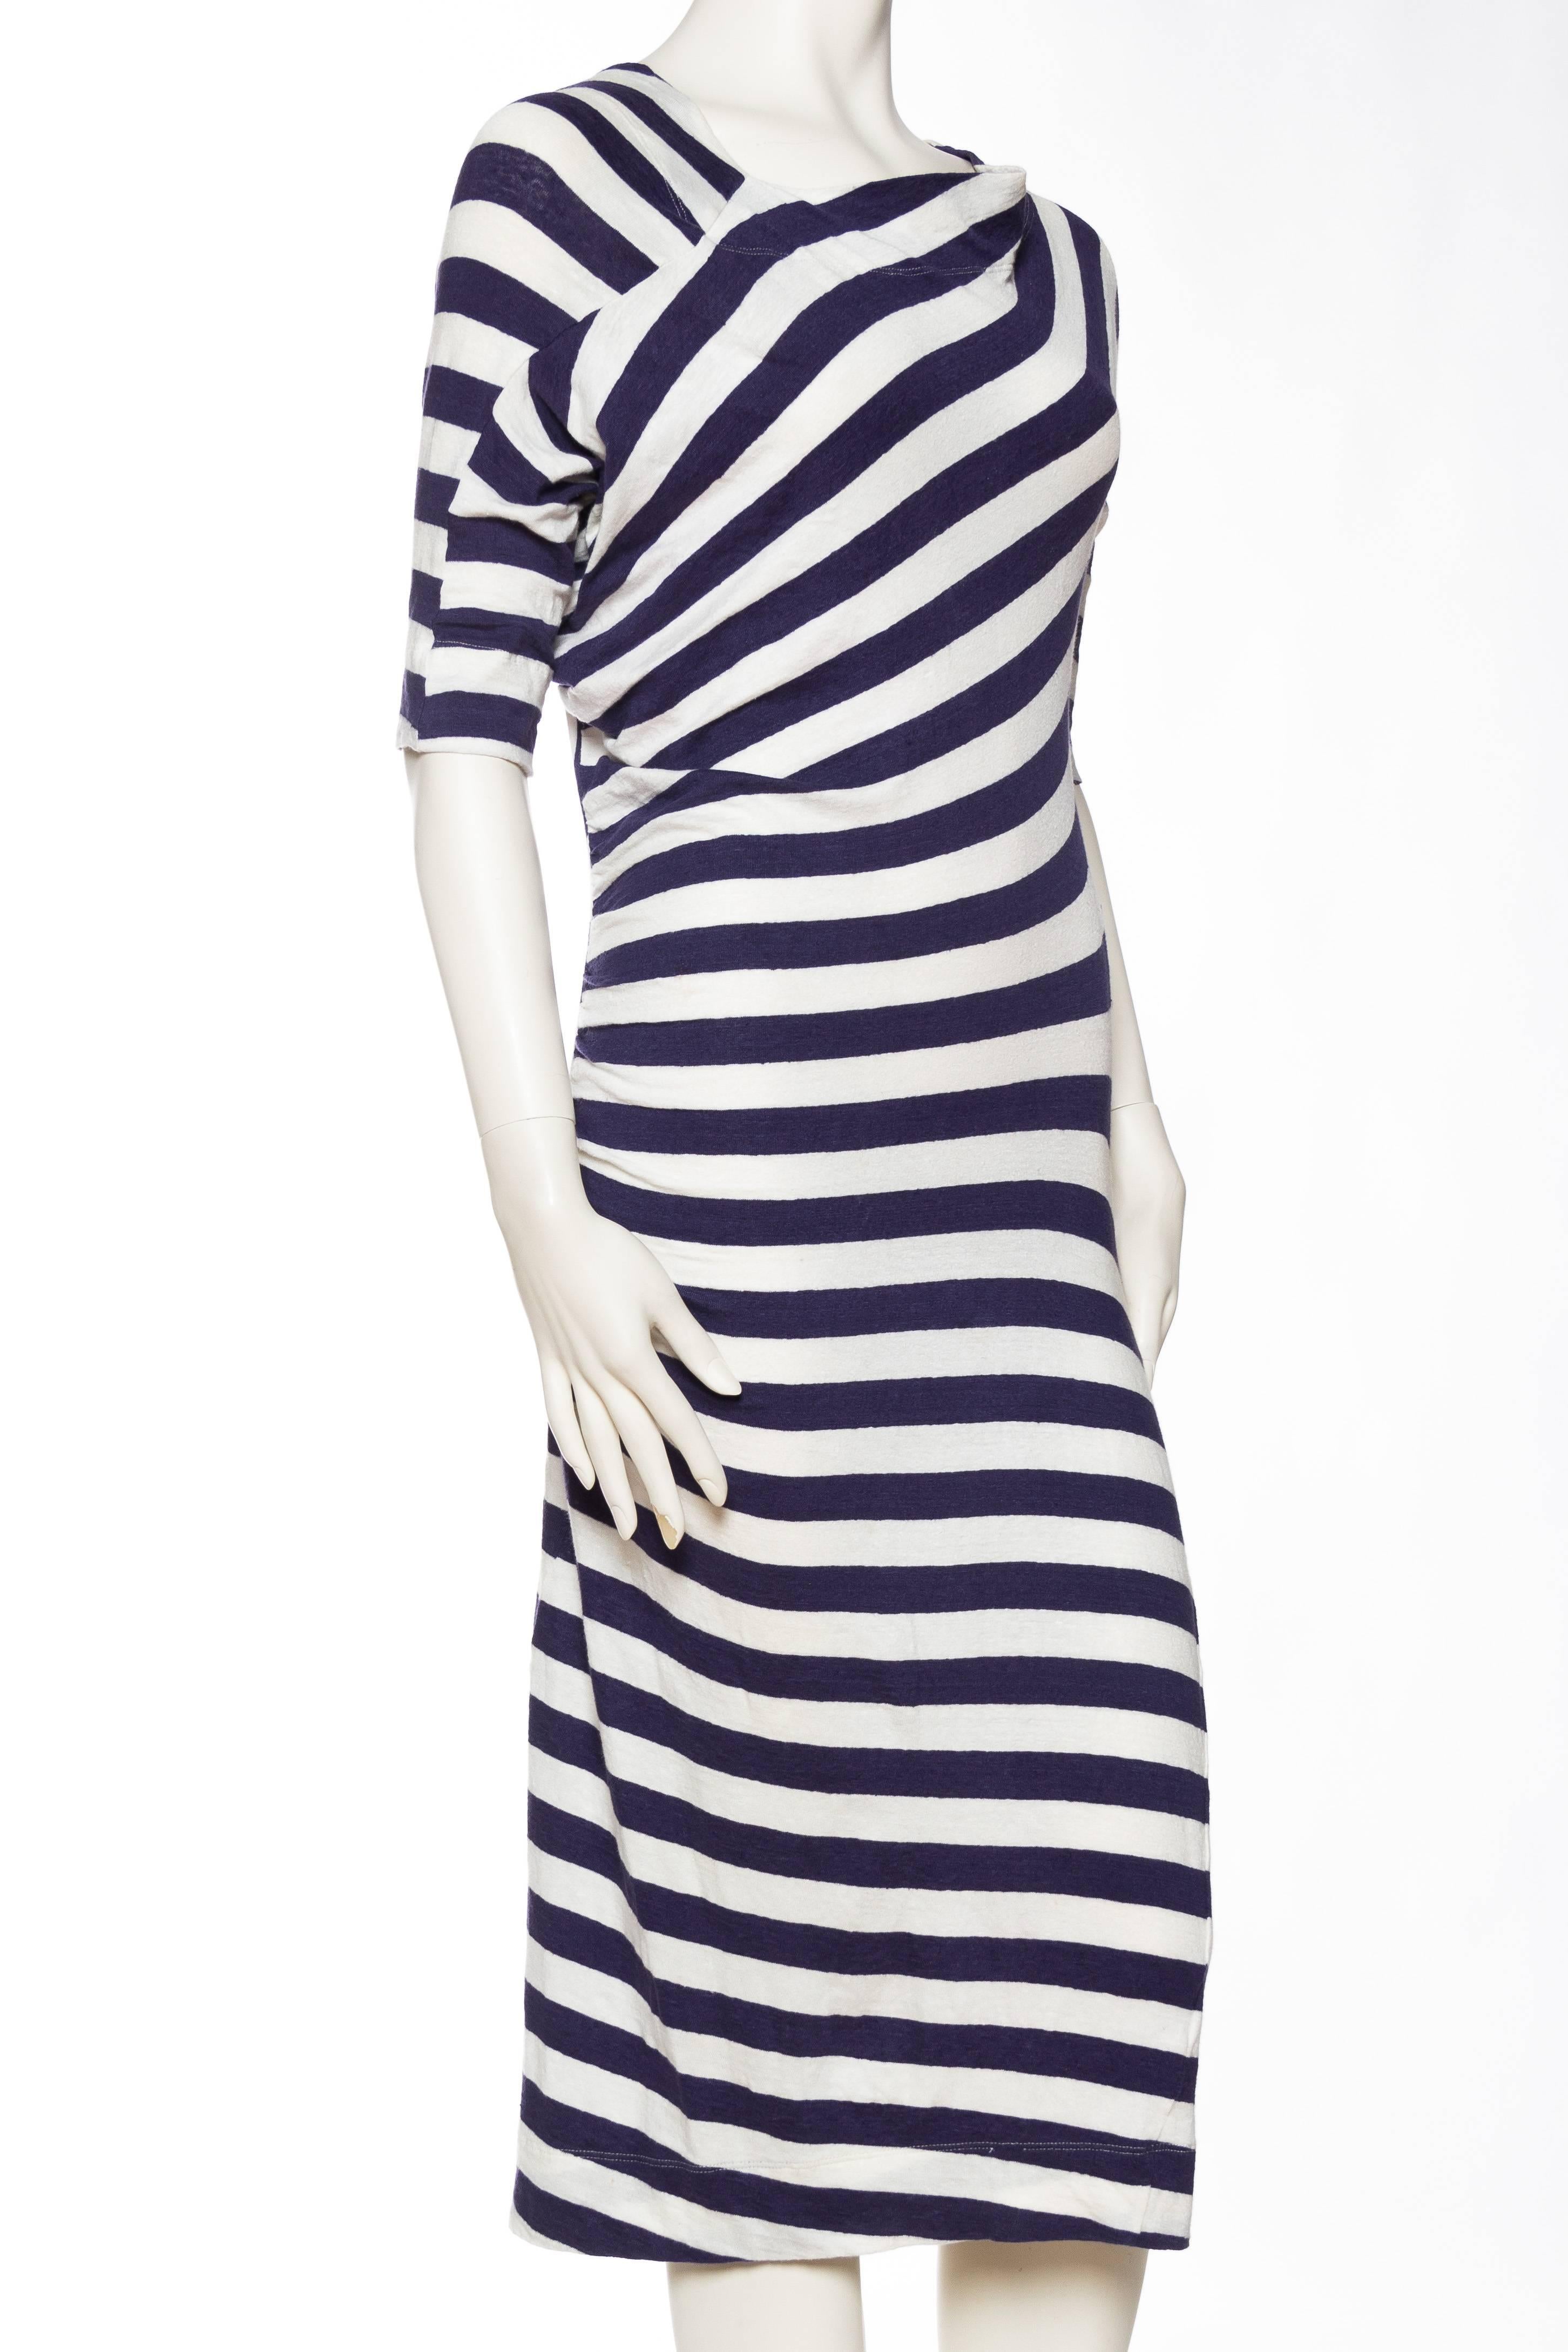 Women's Vivienne Westwood Anglomania Linen/Cotton Knit Dress